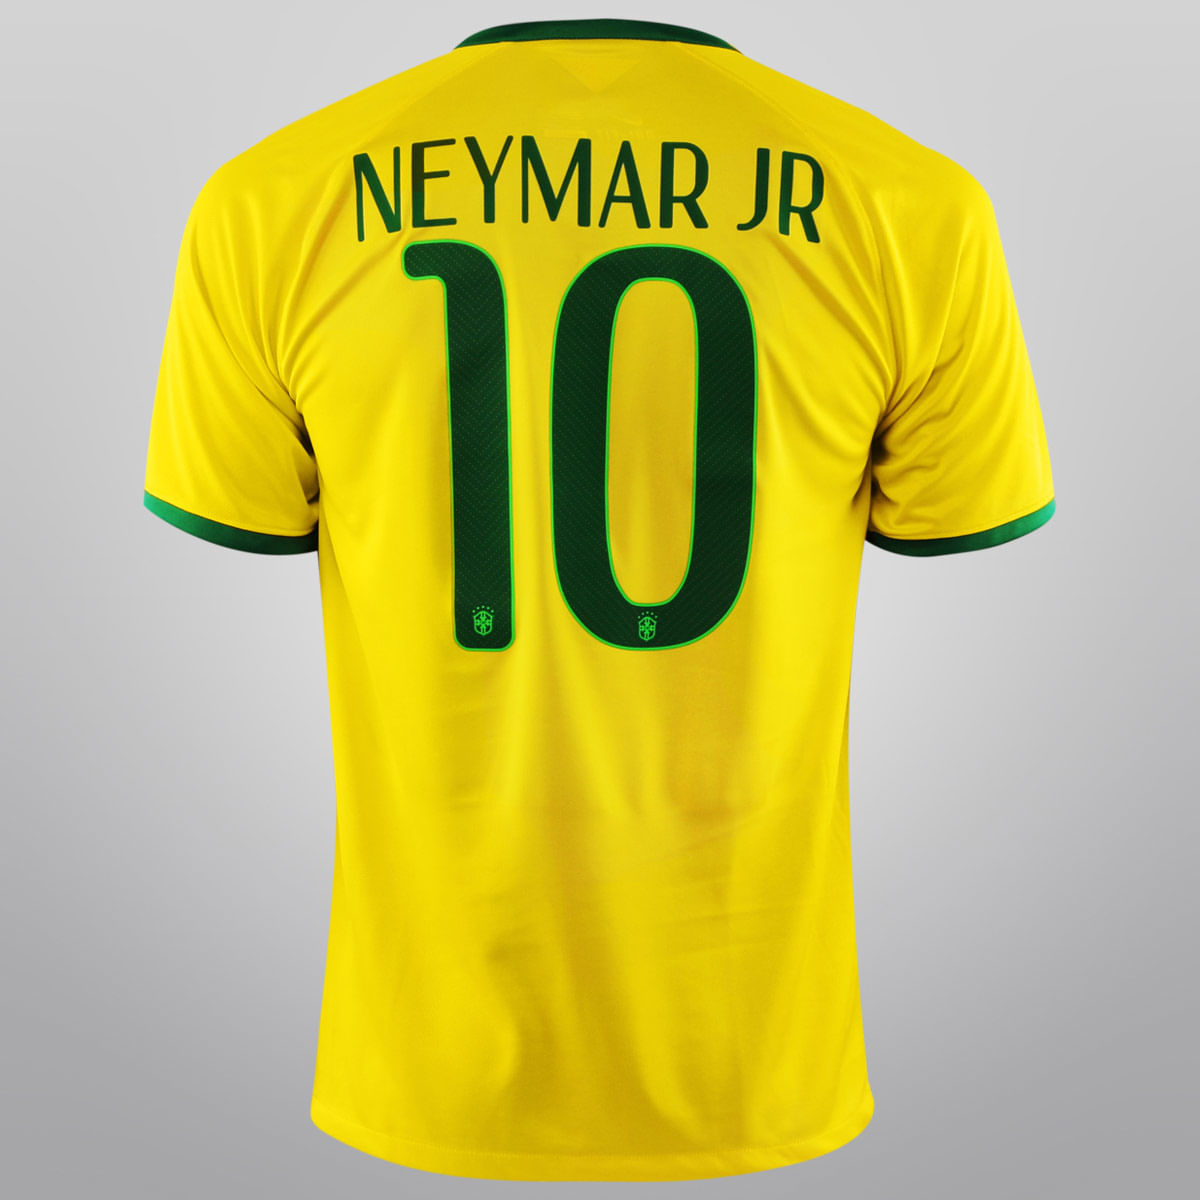 blusão seleção brasileira